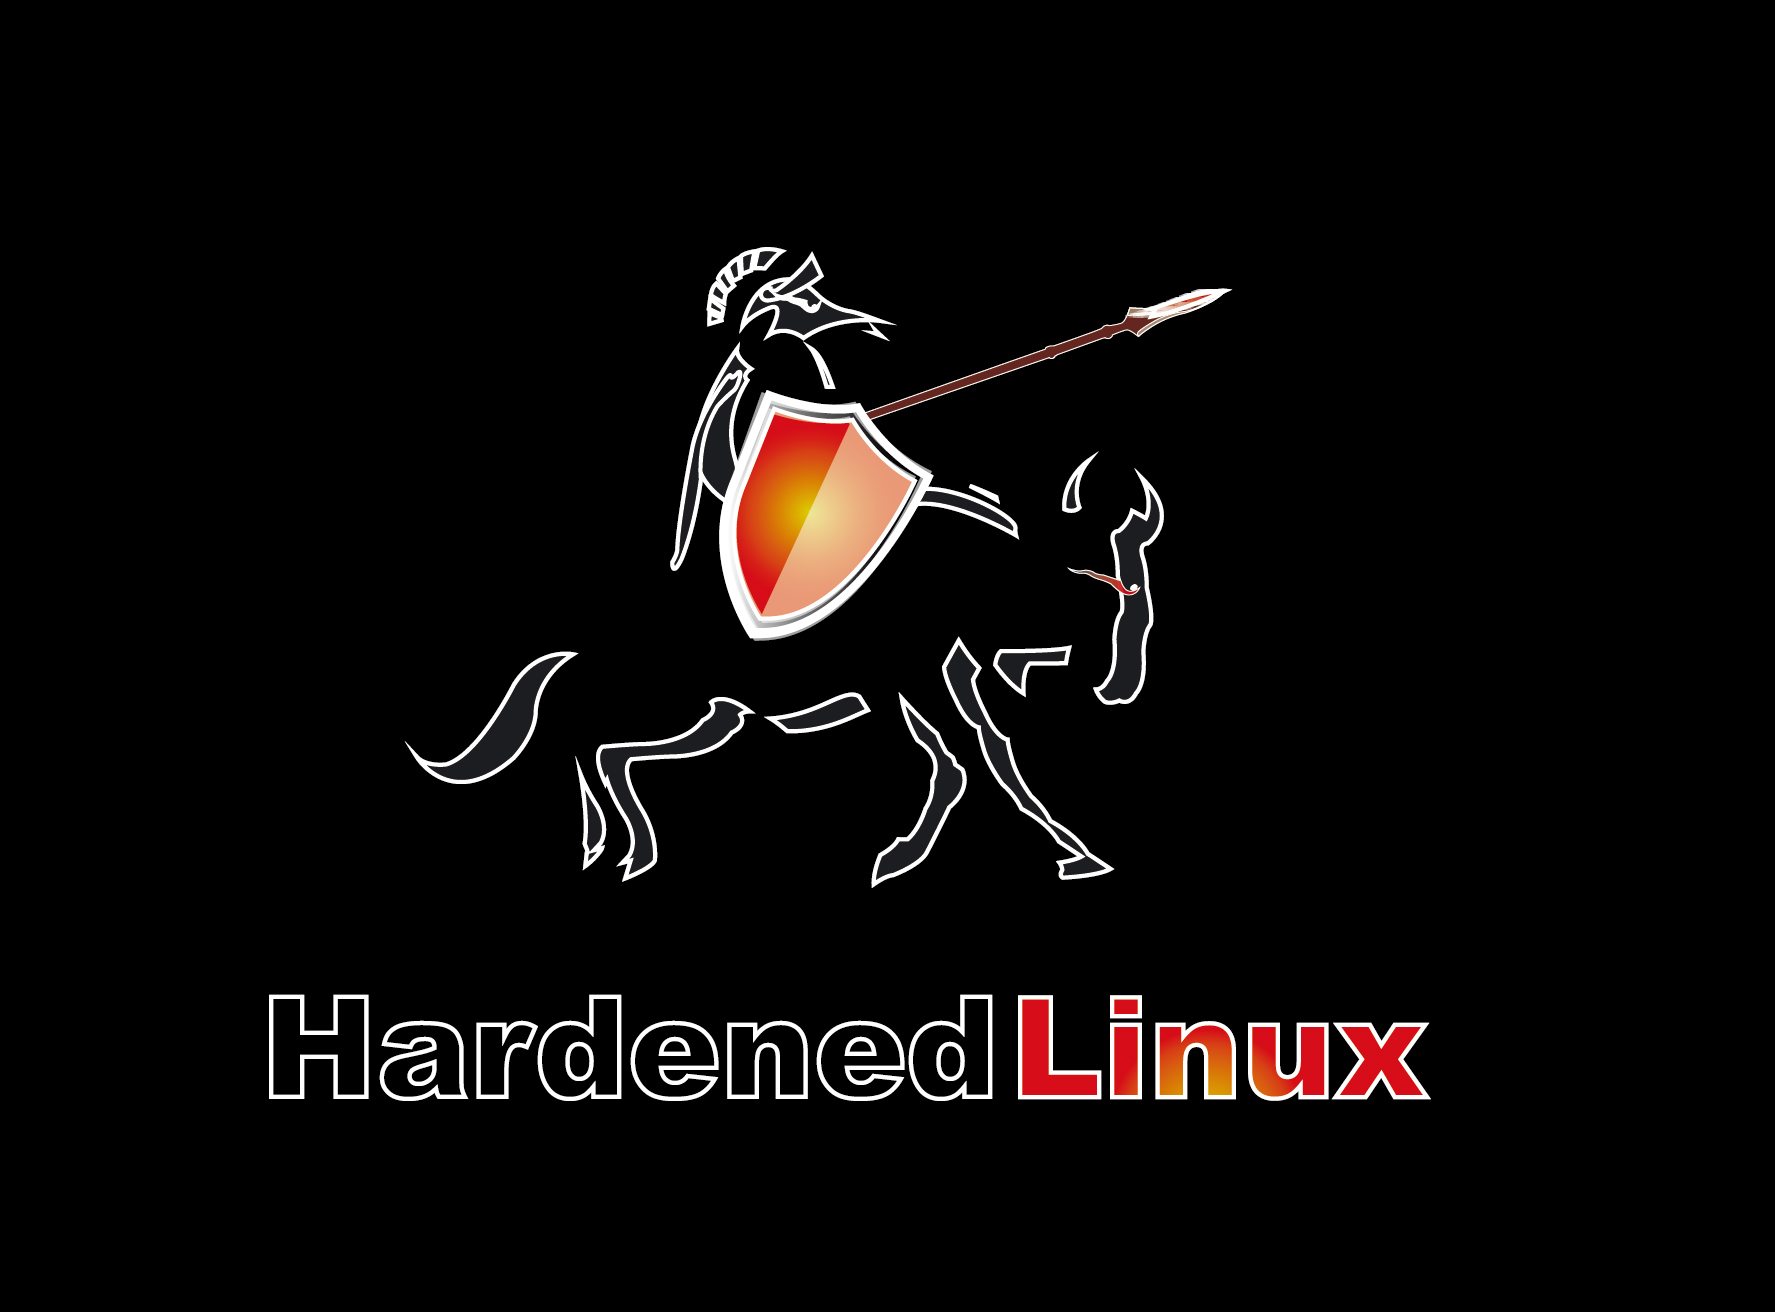 HardenedLinux